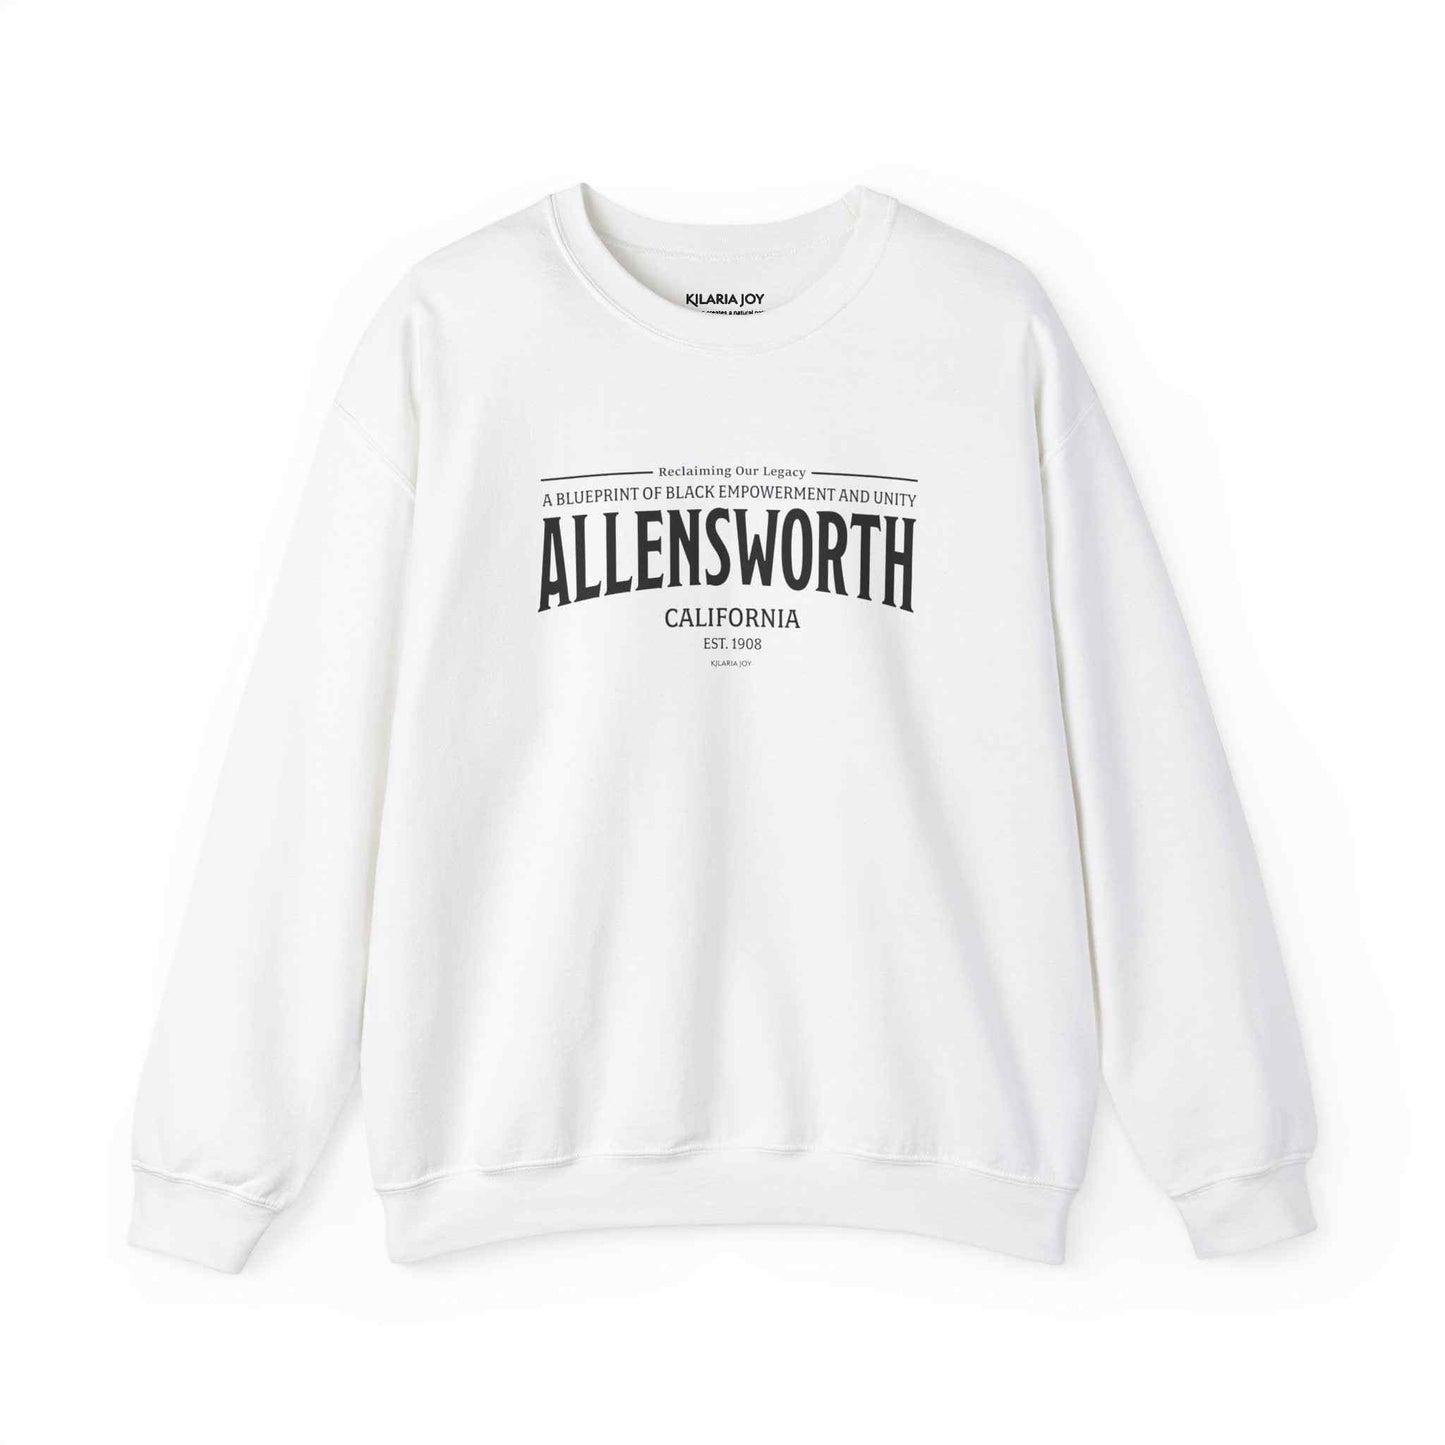 Allensworth Women's Classic Fit Sweatshirt